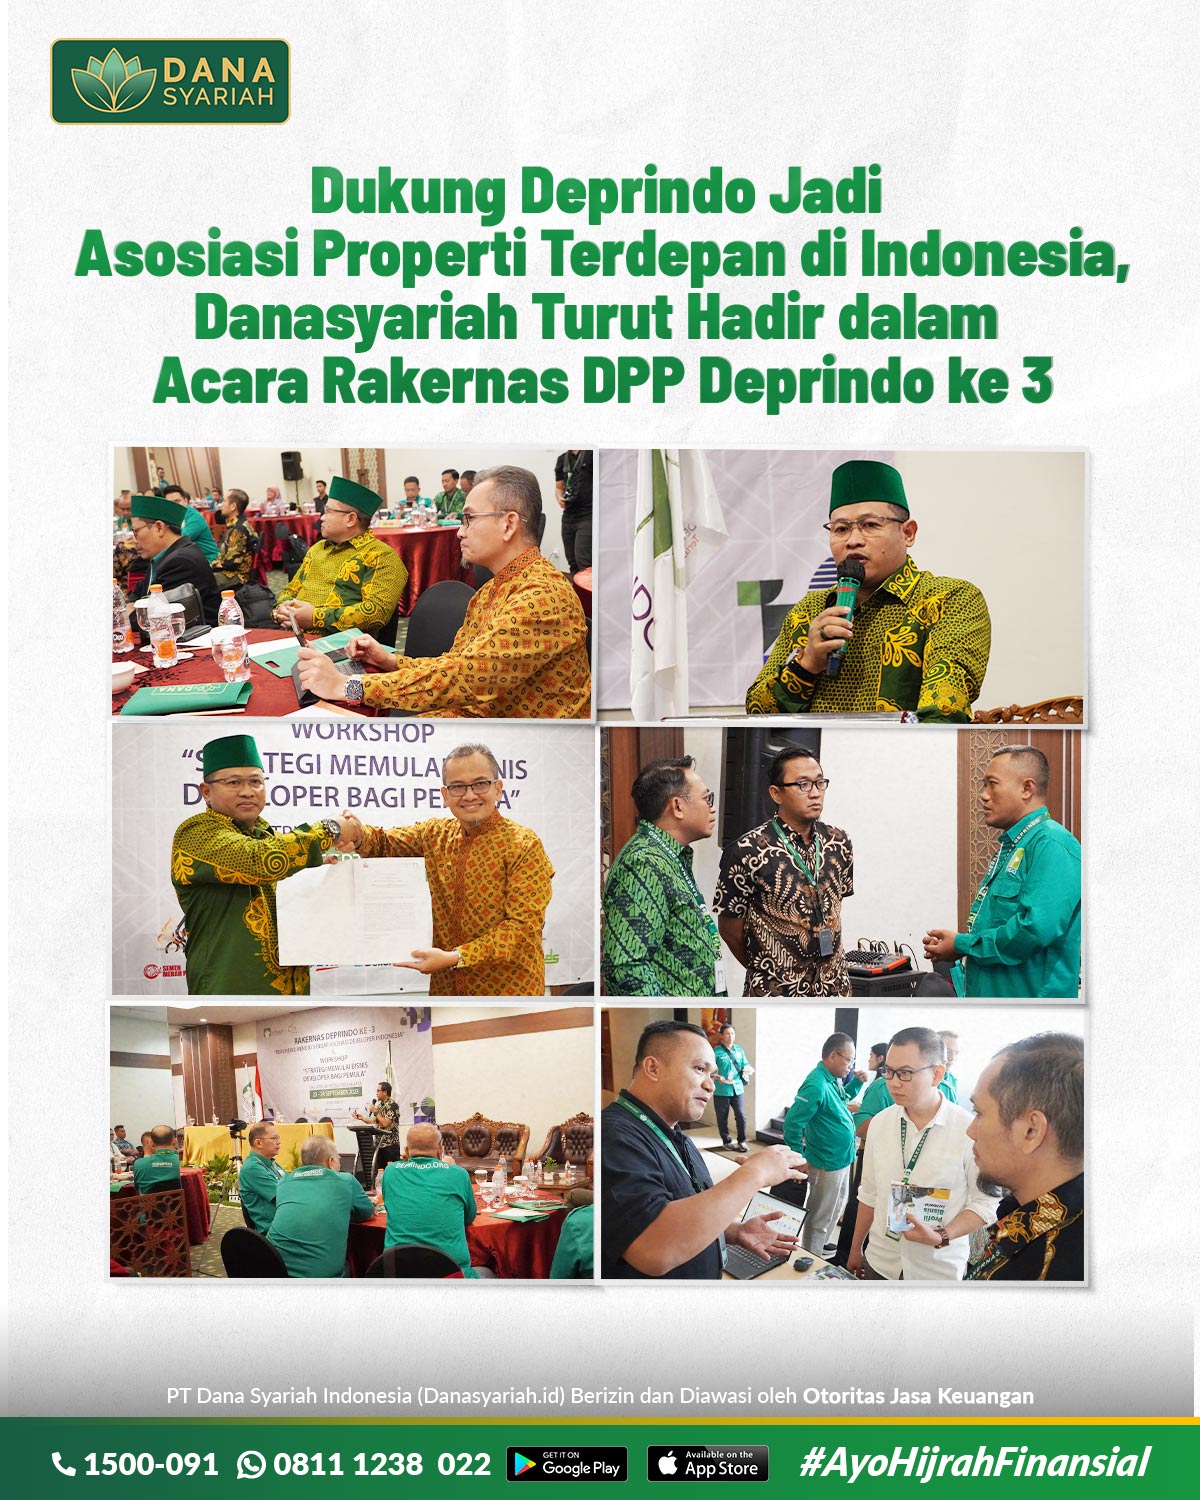 Dana Syariah Dukung Deprindo Jadi Asosiasi Properti Terdepan di Indonesia, Danasyariah Turut Hadir dalam Acara Rakernas DPP Deprindo ke 3